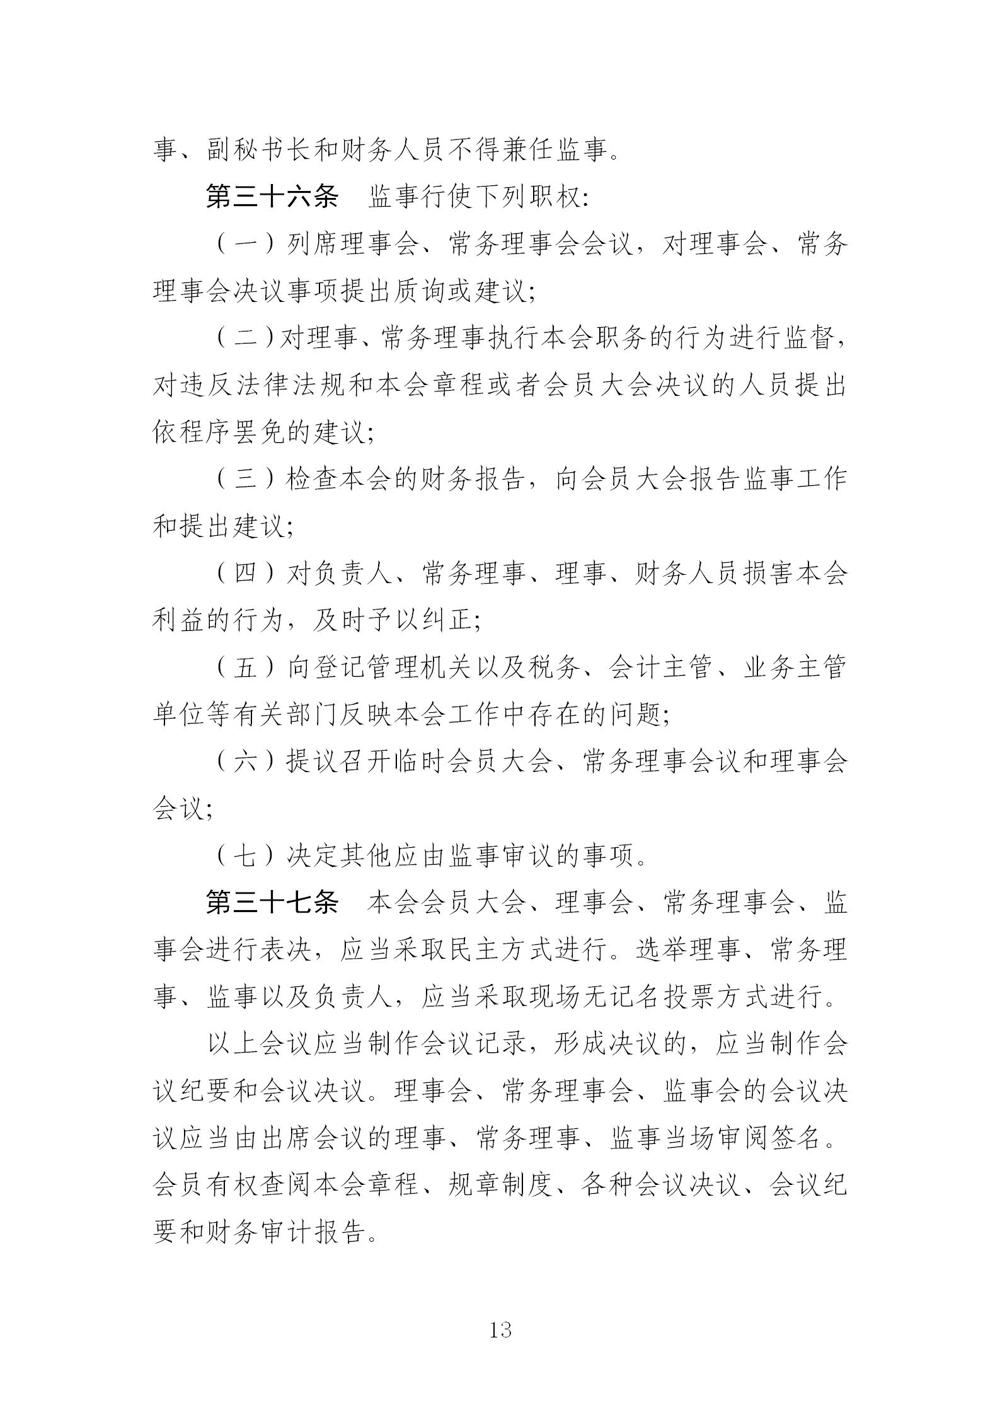 3-广东省羽毛球协会新章程20221107-根据民政厅修改意见修改_13